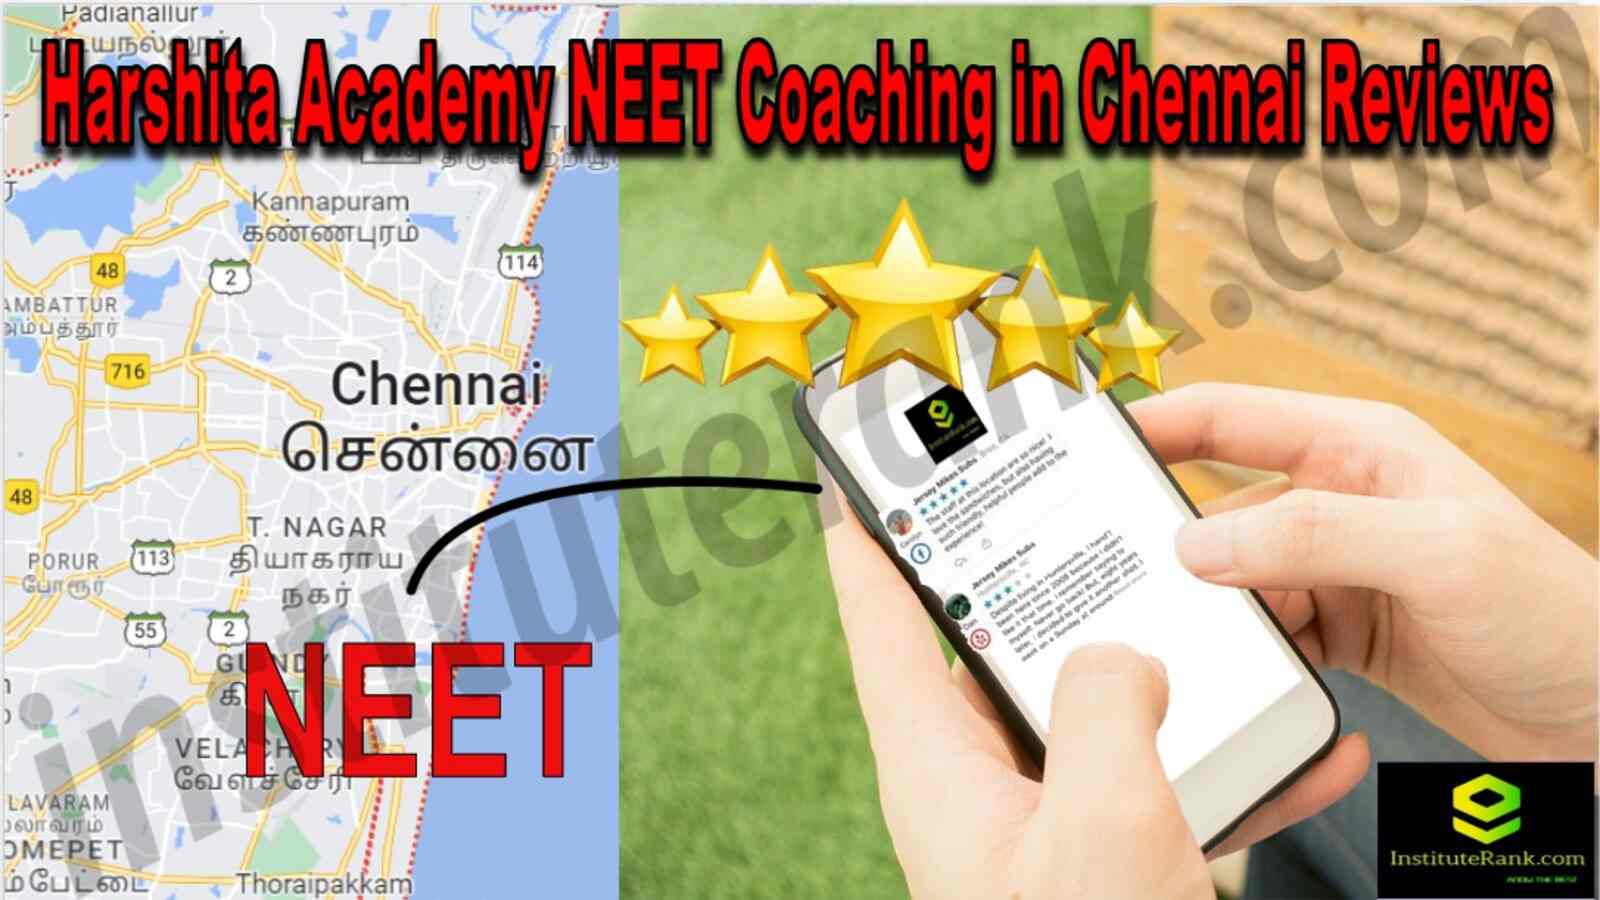 Harshita Academy NEET Coaching in Chennai Reviews